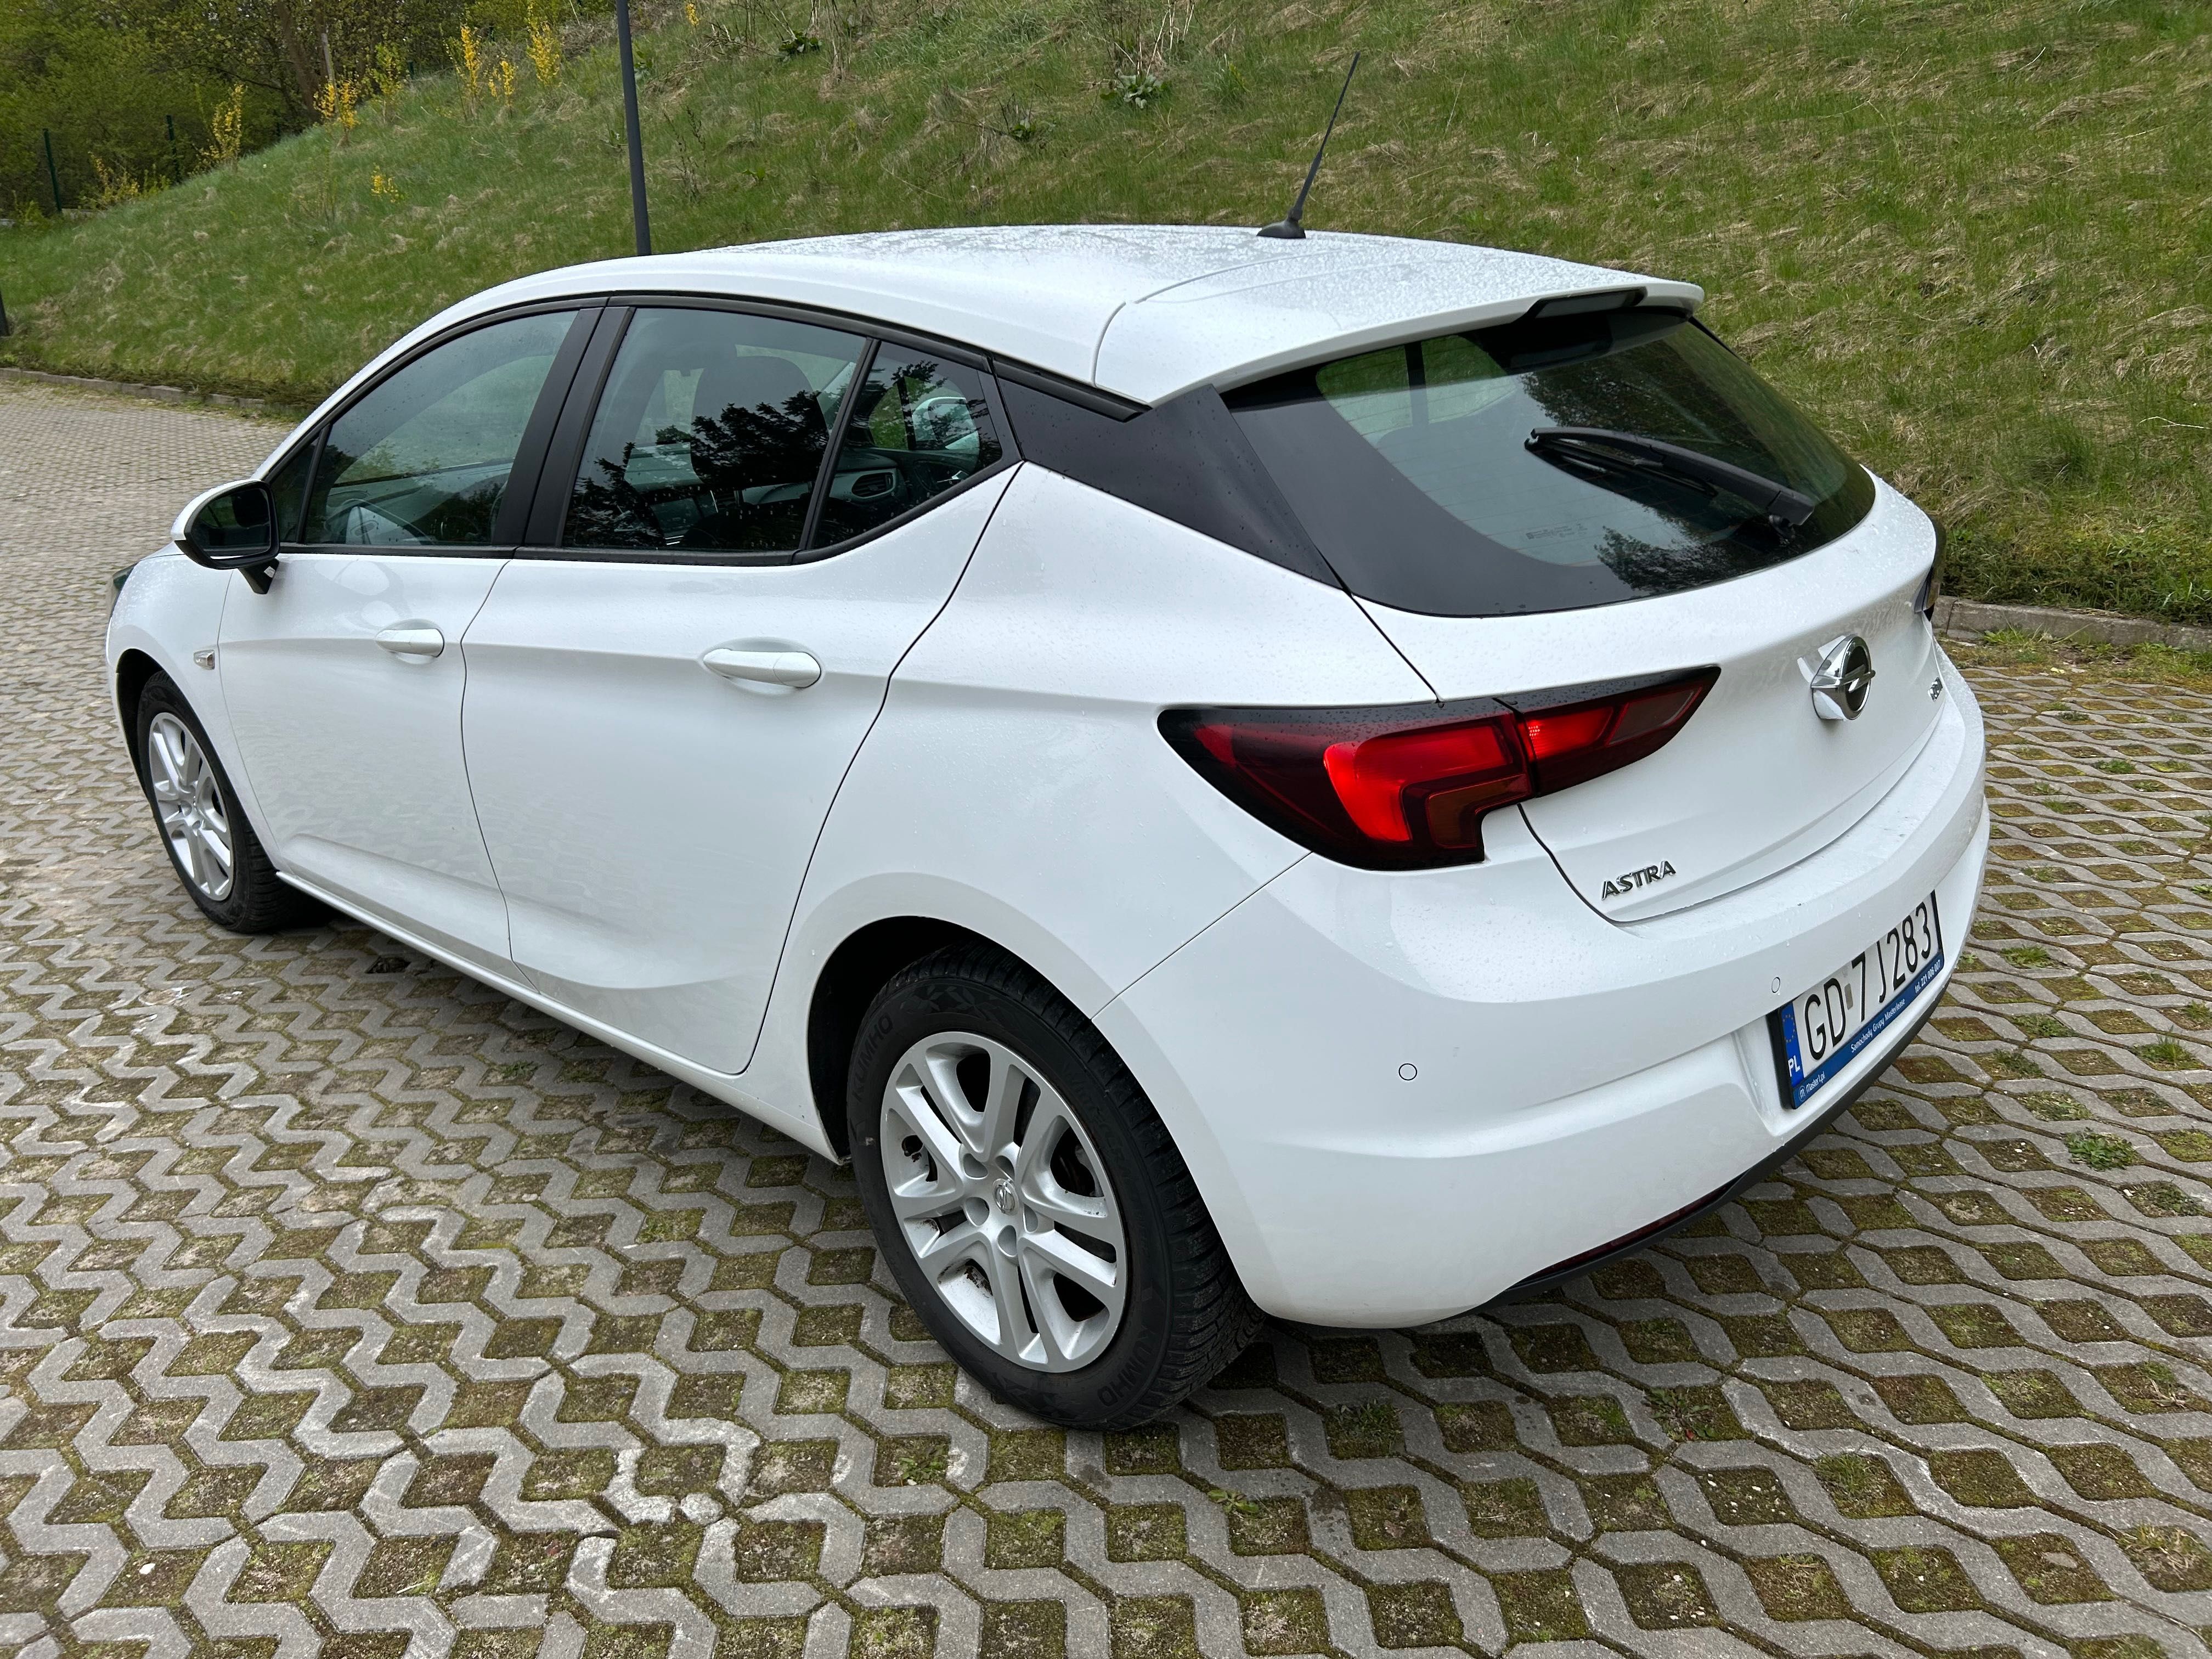 Opel Astra 1.6 Cdti 110km, salon Polska, led, duże radio